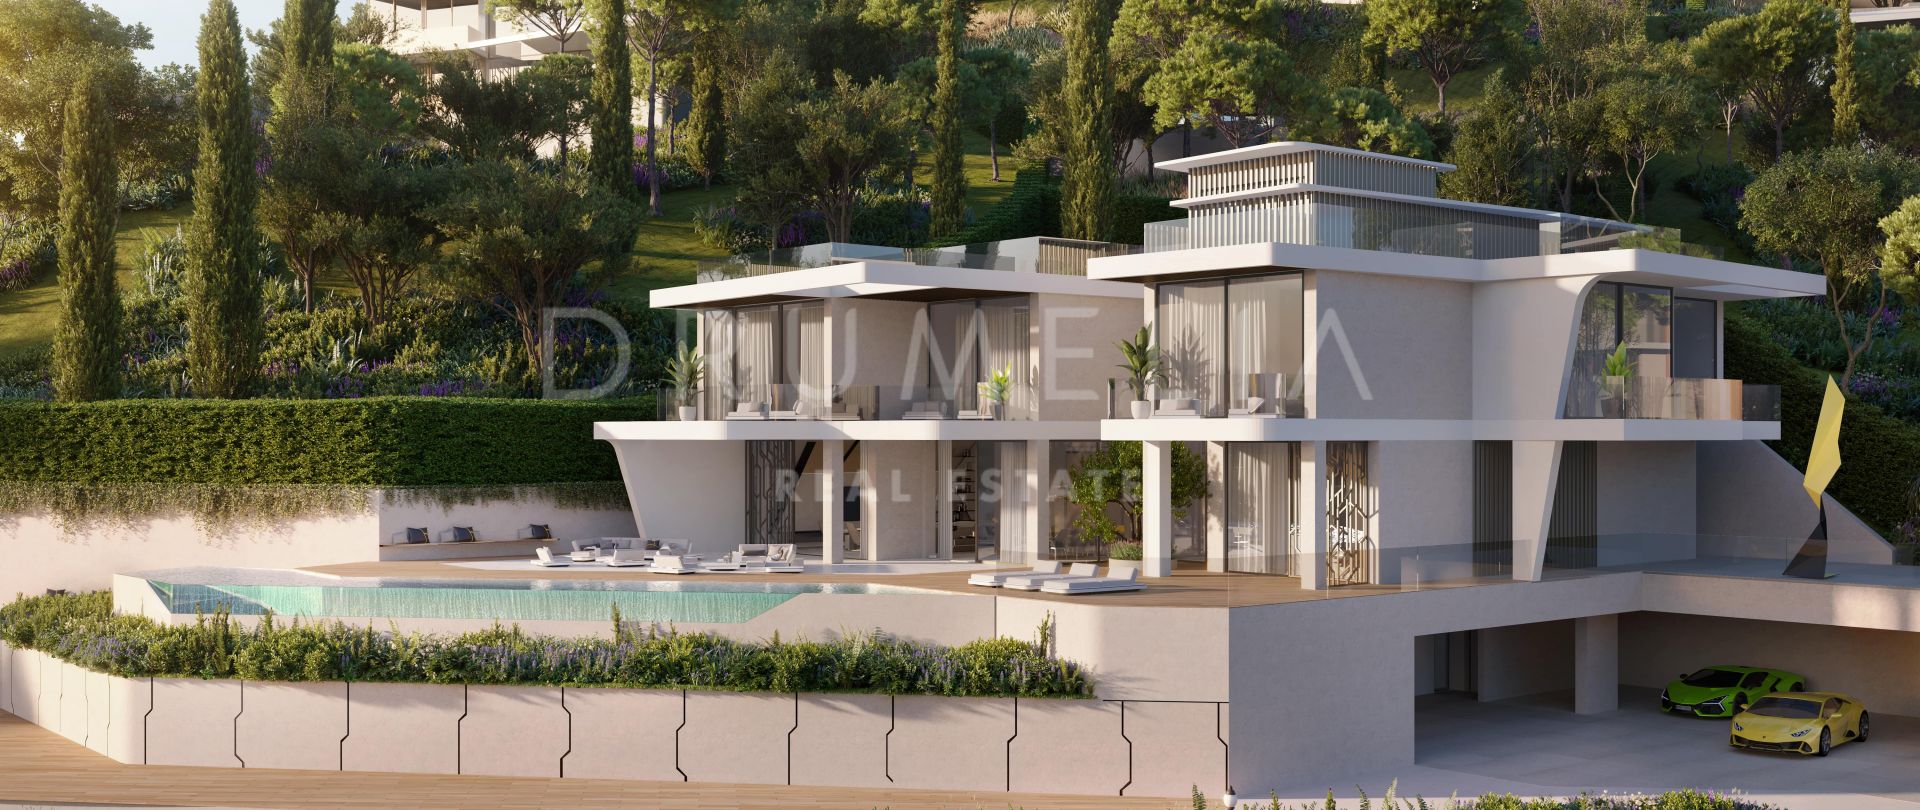 Magnífica villa moderna a estrenar con vistas panorámicas al mar en La Alquería, Benahavís